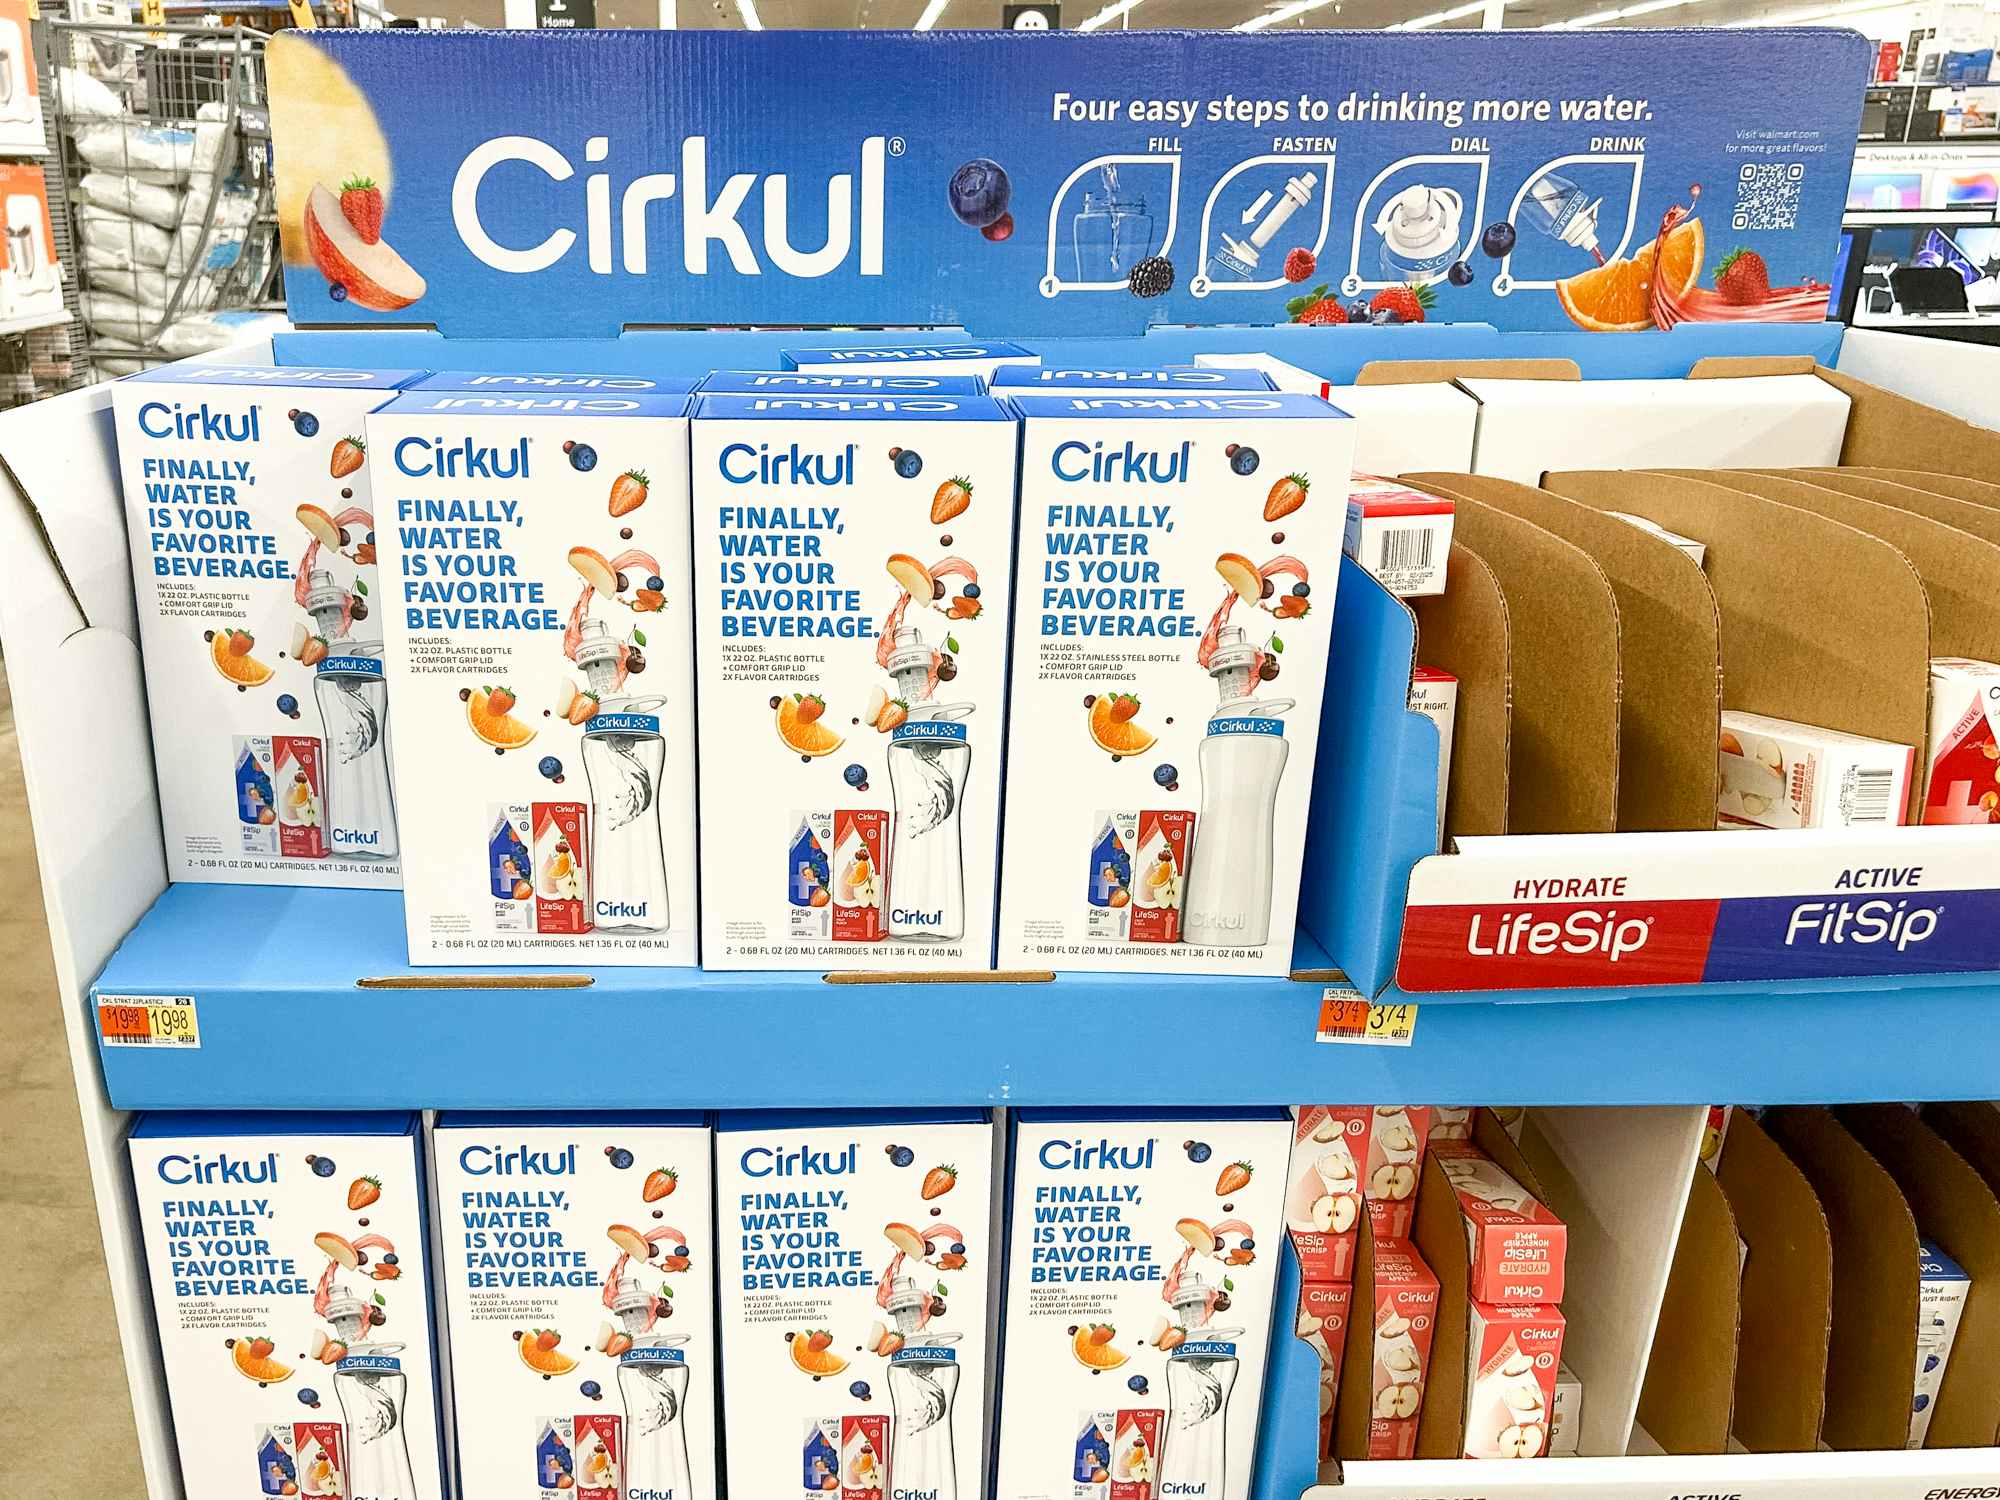 Cirkul water bottle boxes on display at Walmart